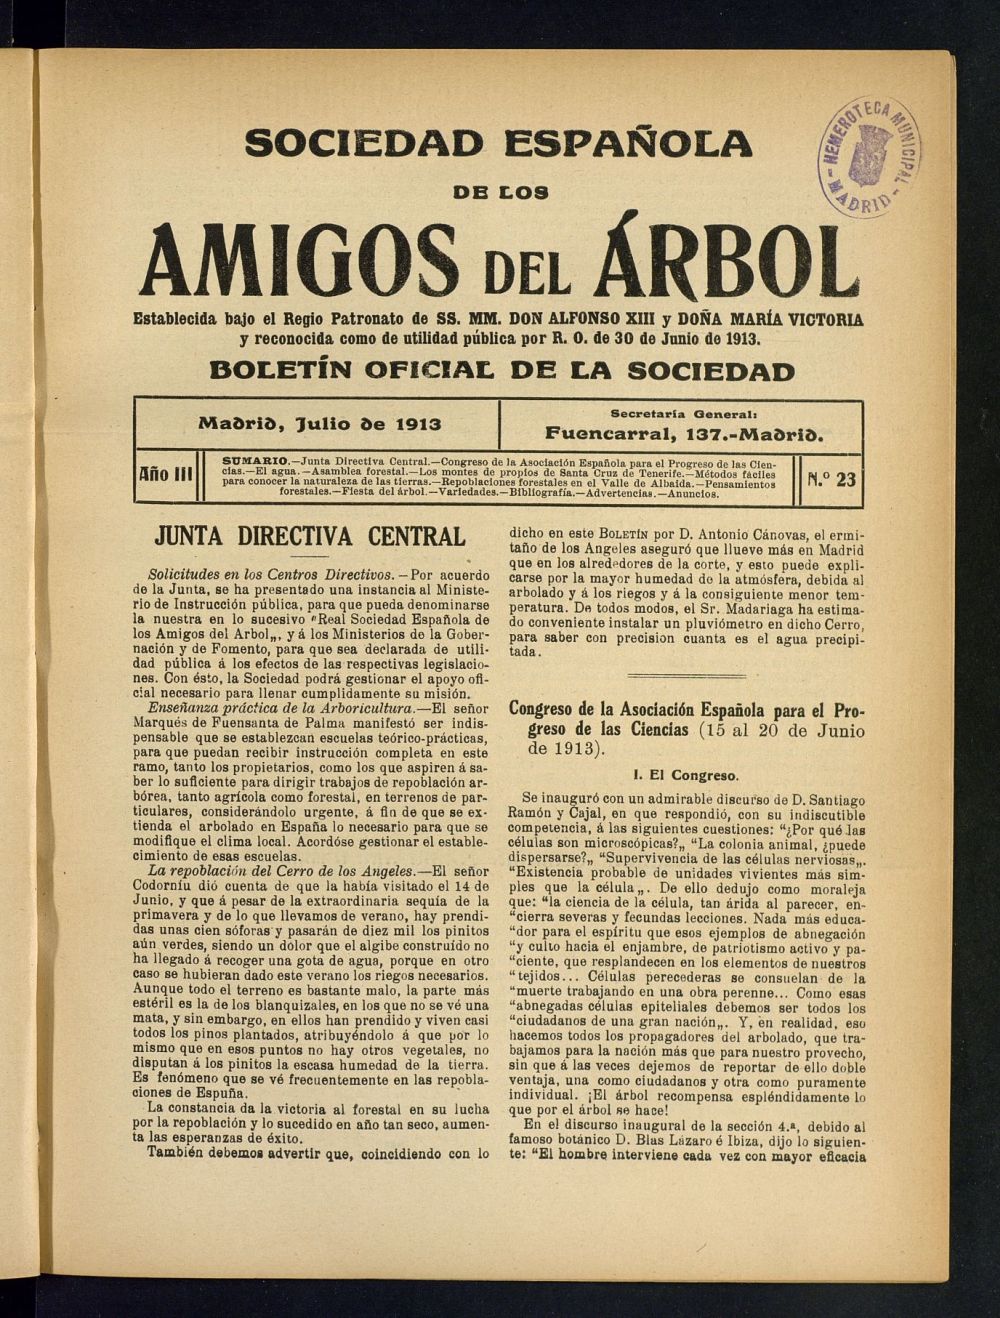 Boletn Comisin organizadora de la Sociedad Espaola de los amigos del rbol de julio de 1913